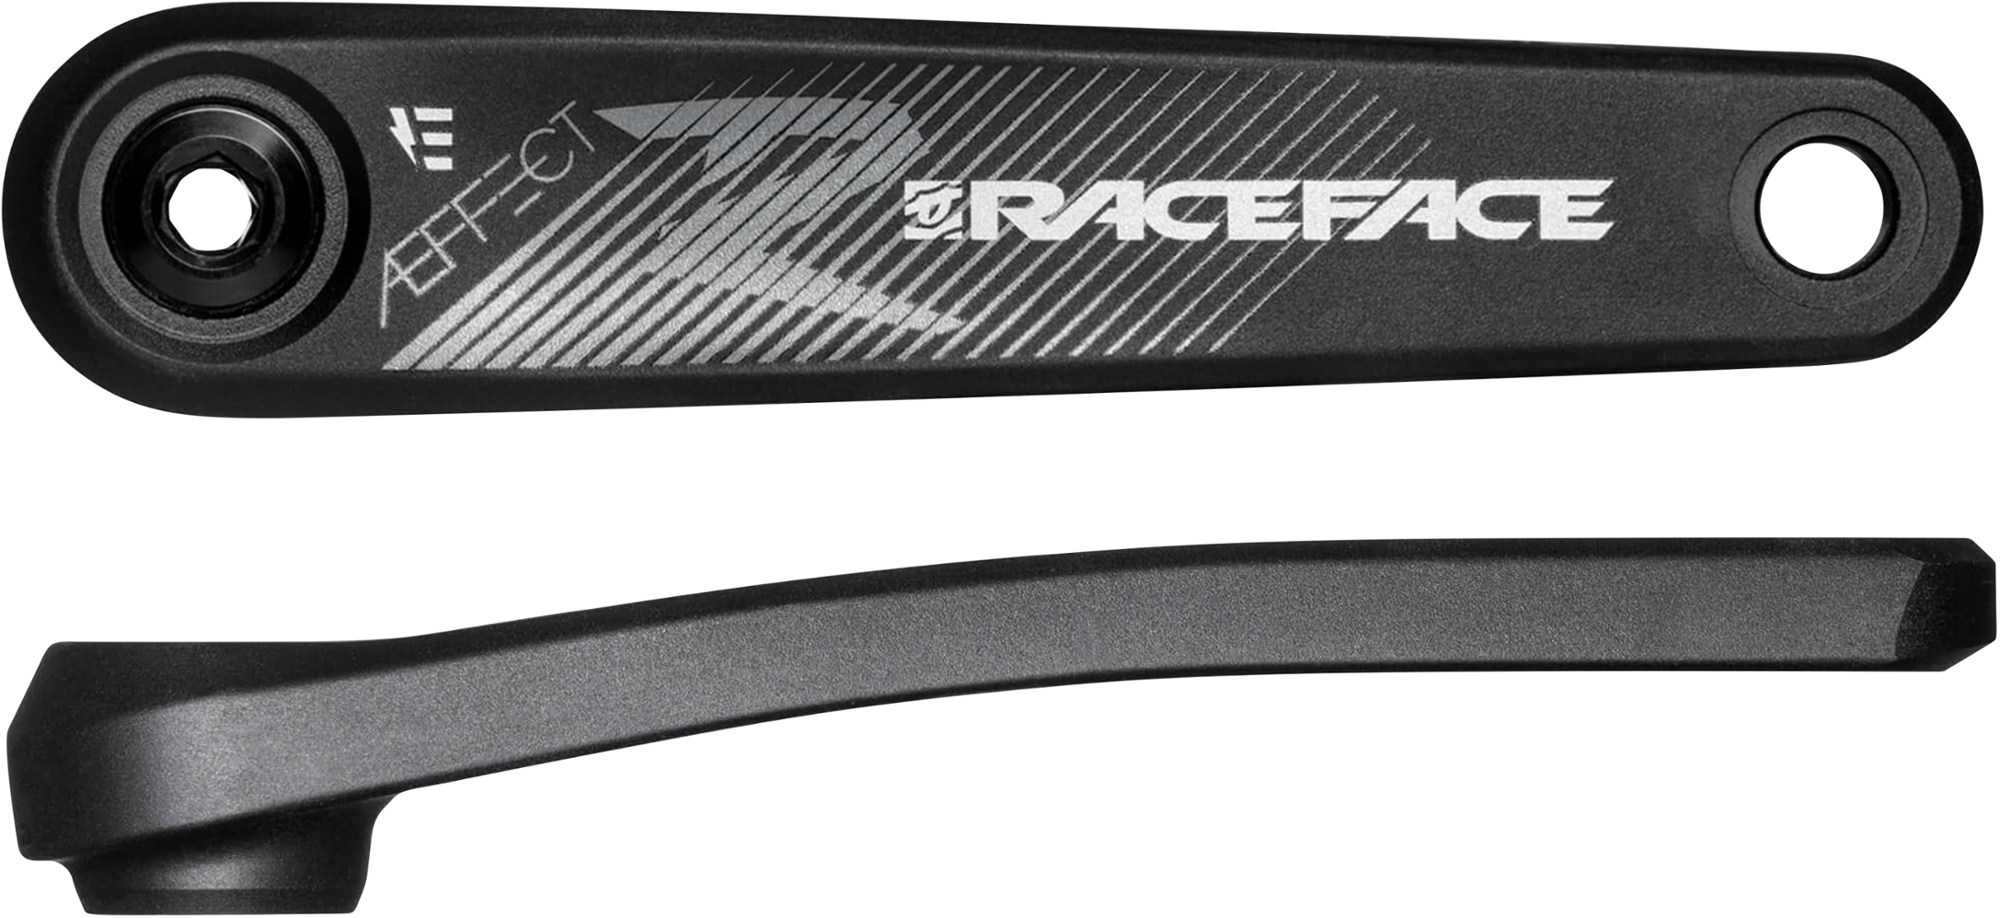 Комплект шатунов Aeffect R для электронного велосипеда Race Face, черный